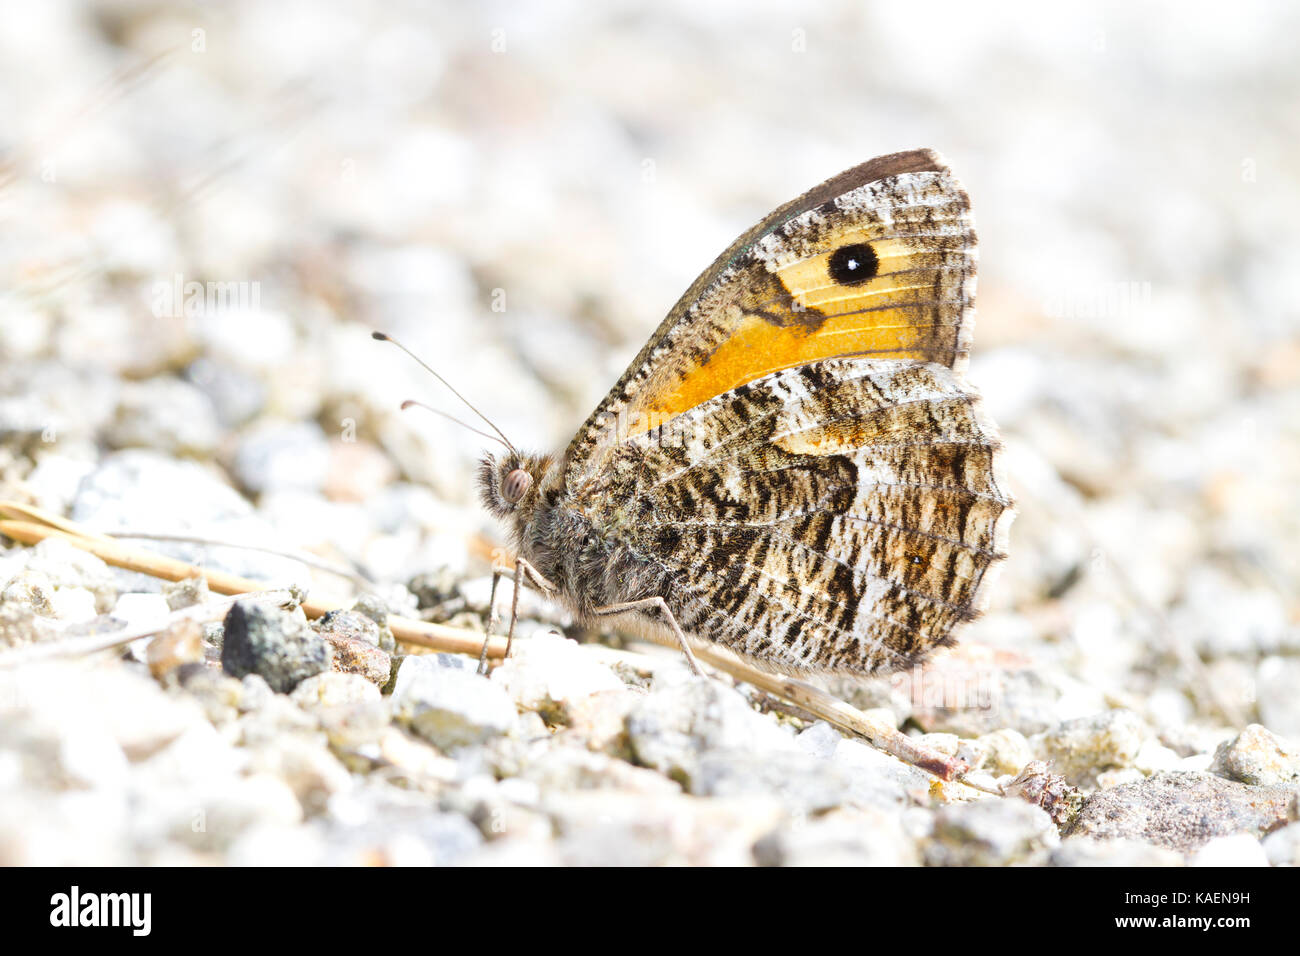 Grayling (semele) Clotilde papillon adulte au soleil sur les résidus miniers. Shropshire, Angleterre. Juillet. Banque D'Images